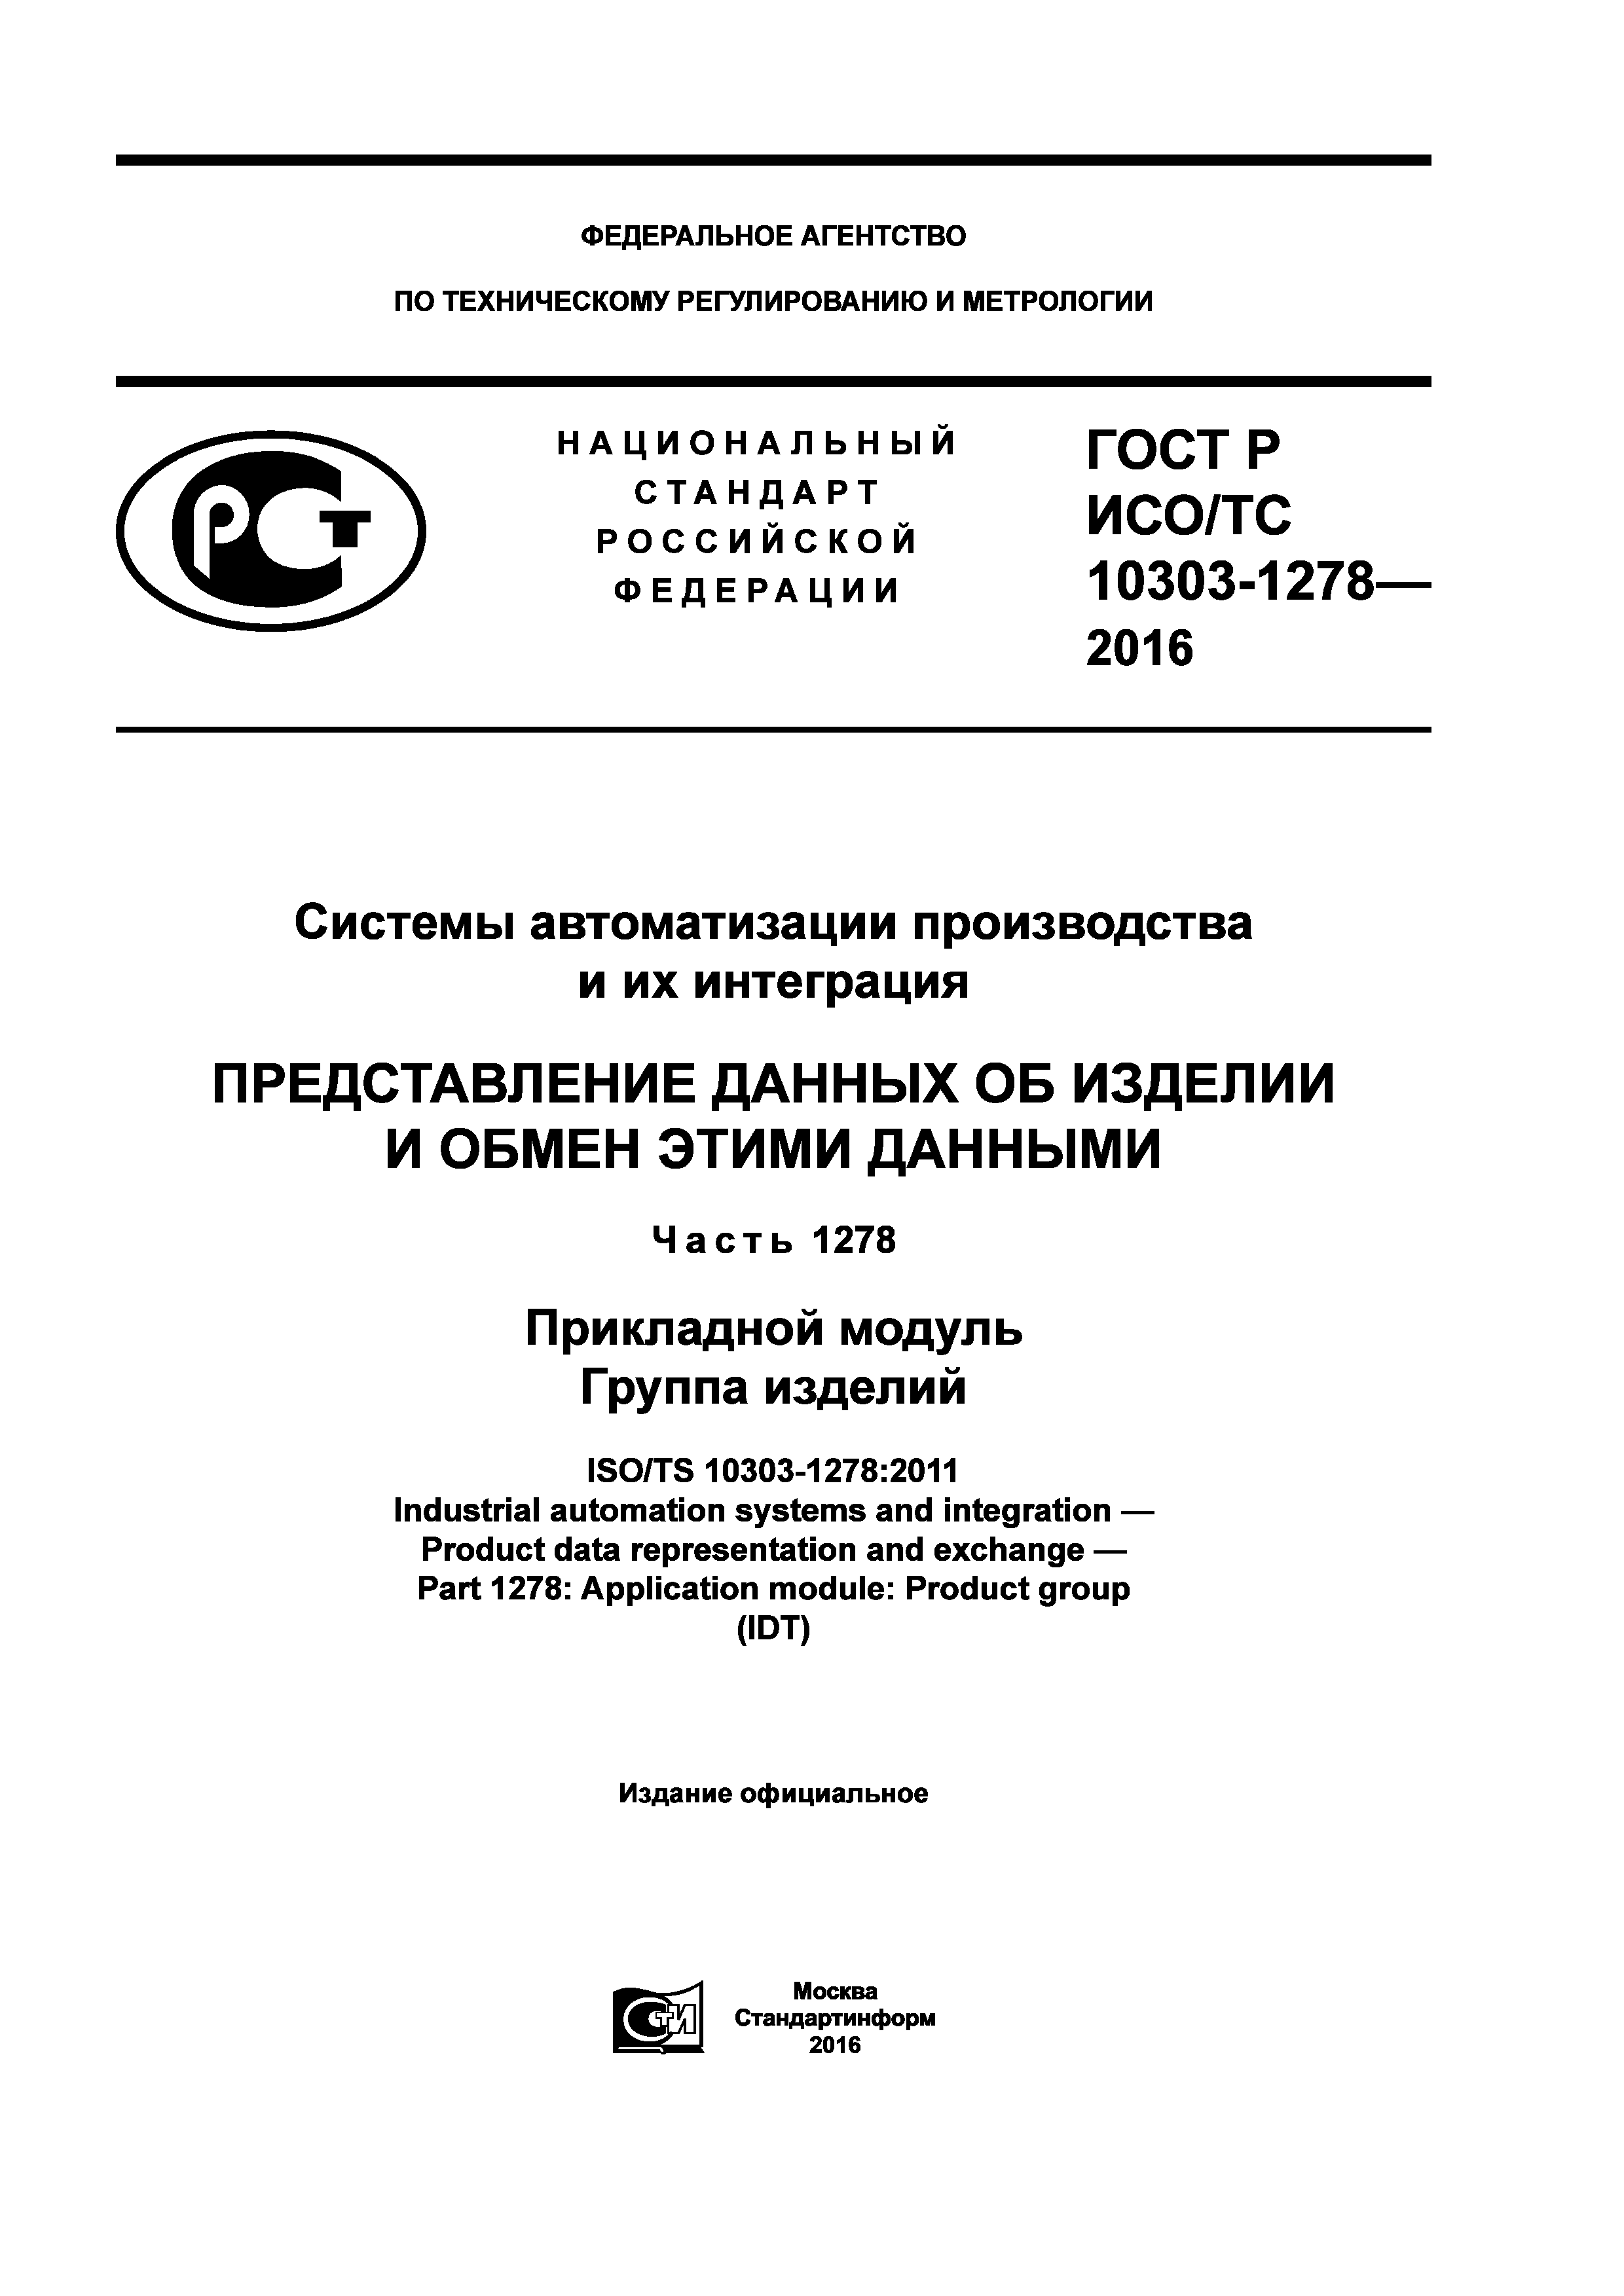 ГОСТ Р ИСО/ТС 10303-1278-2016